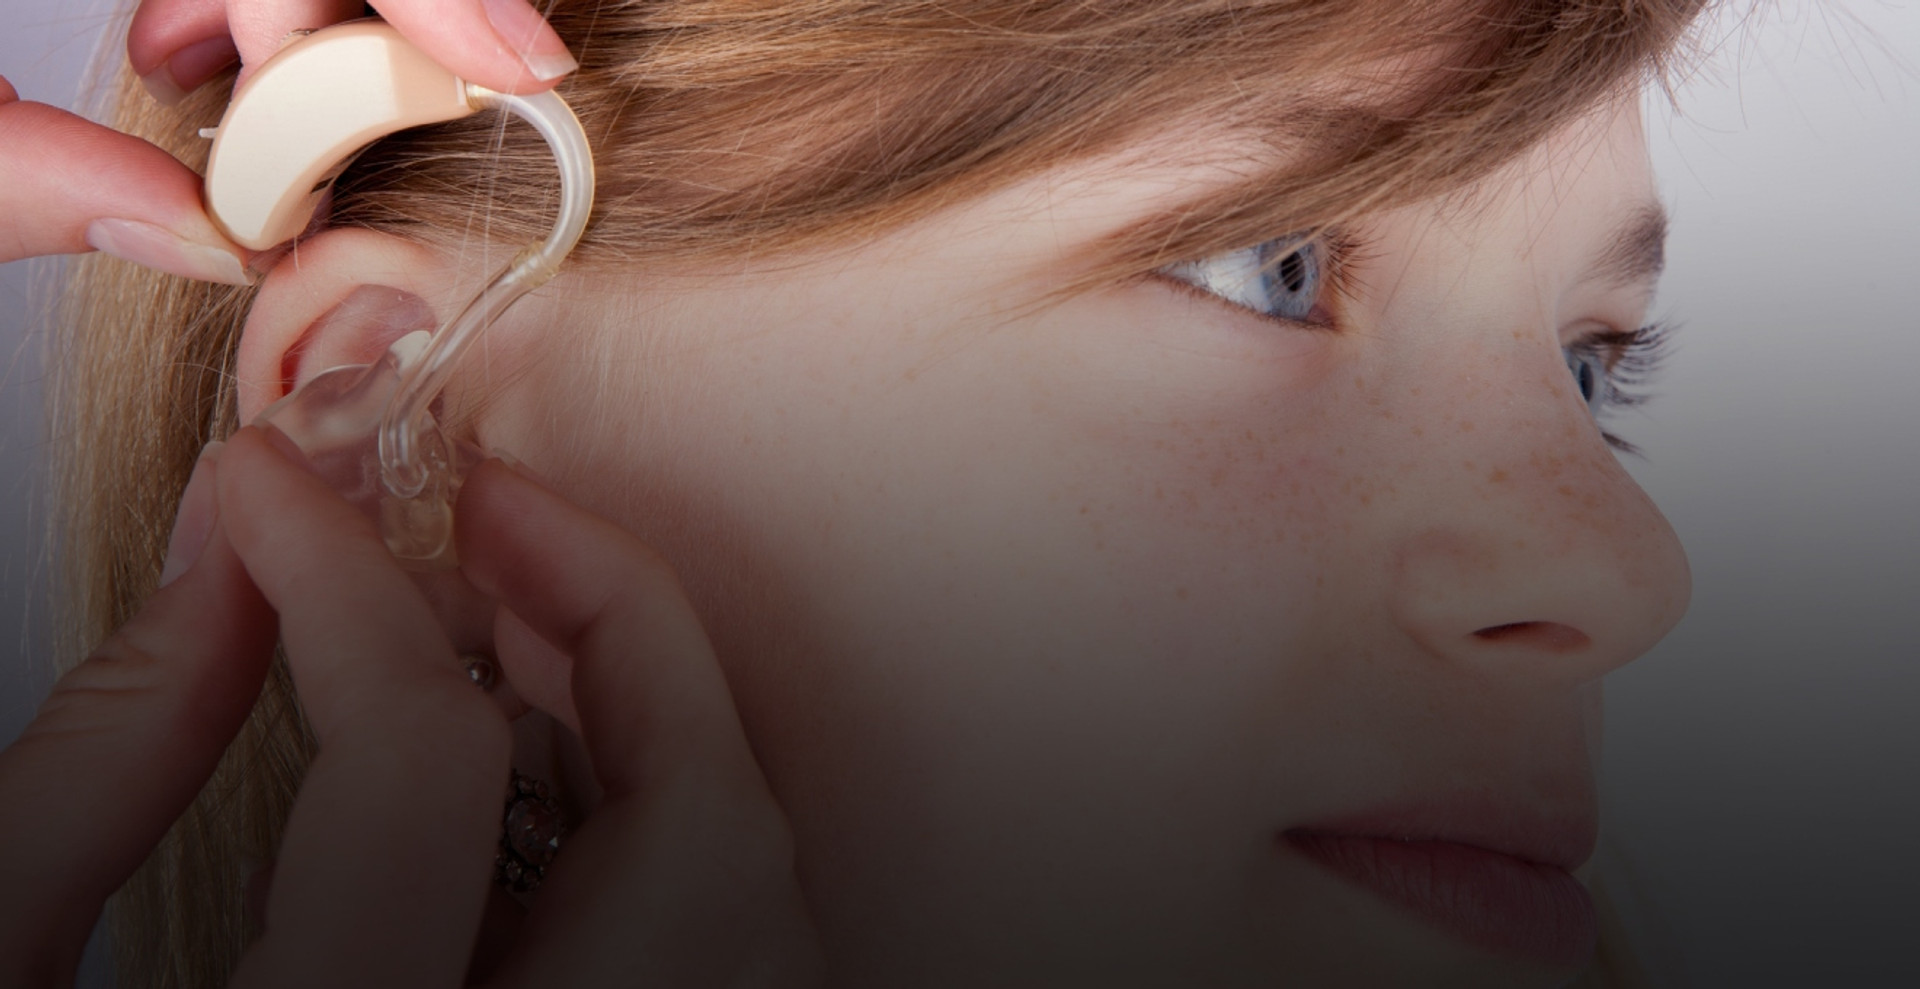 Чи знаєте ви, як живуть діти, які мають порушення слуху?